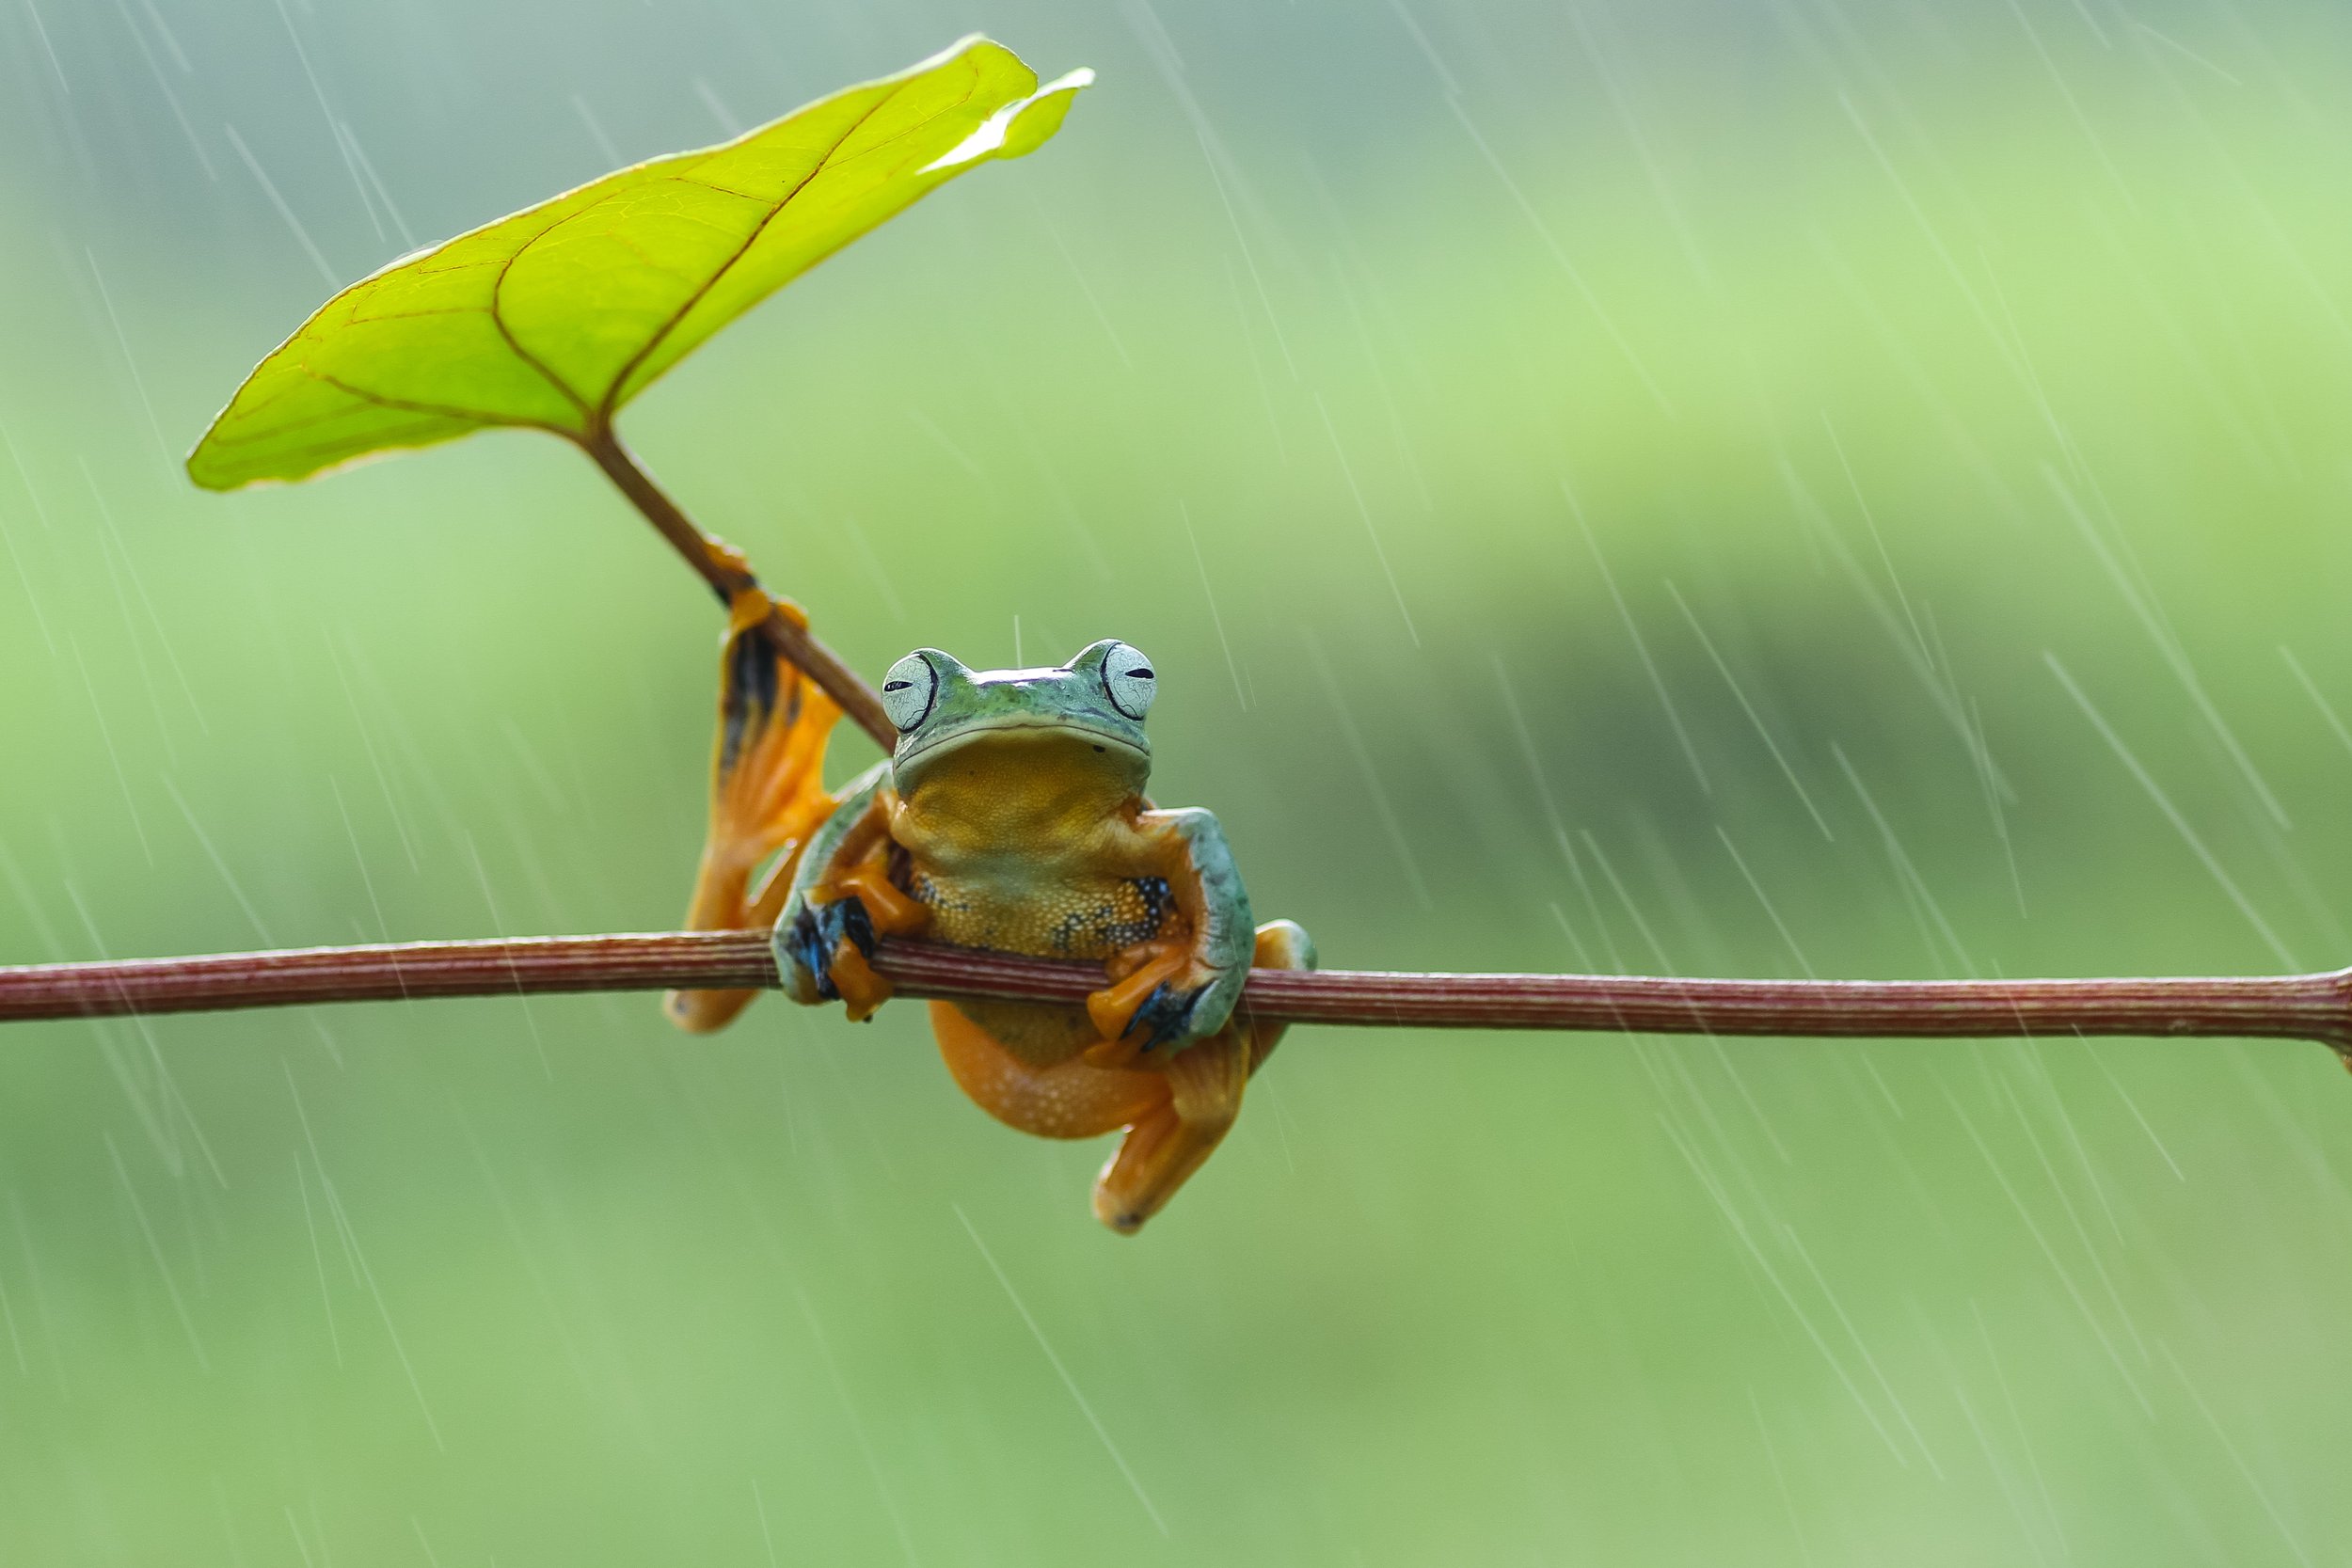 frog-with-rain-2022-11-02-17-38-02-utc.jpg